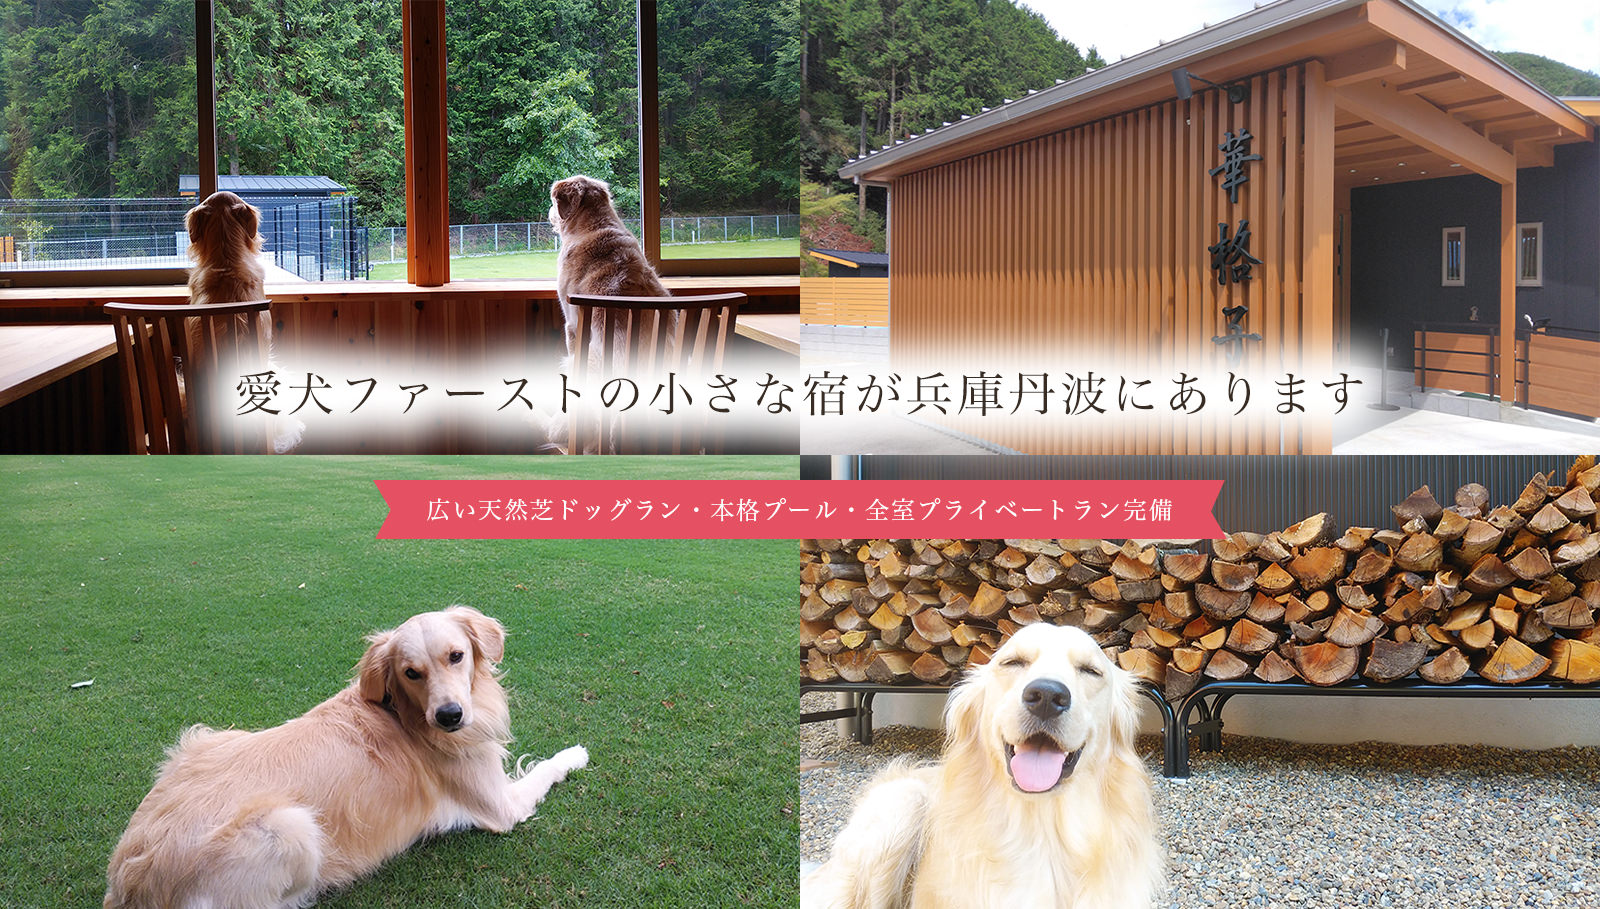 愛犬ファーストの小さな宿が兵庫丹波にあります 広い天然芝ドッグラン、本格プール、全室プライベートラン完備